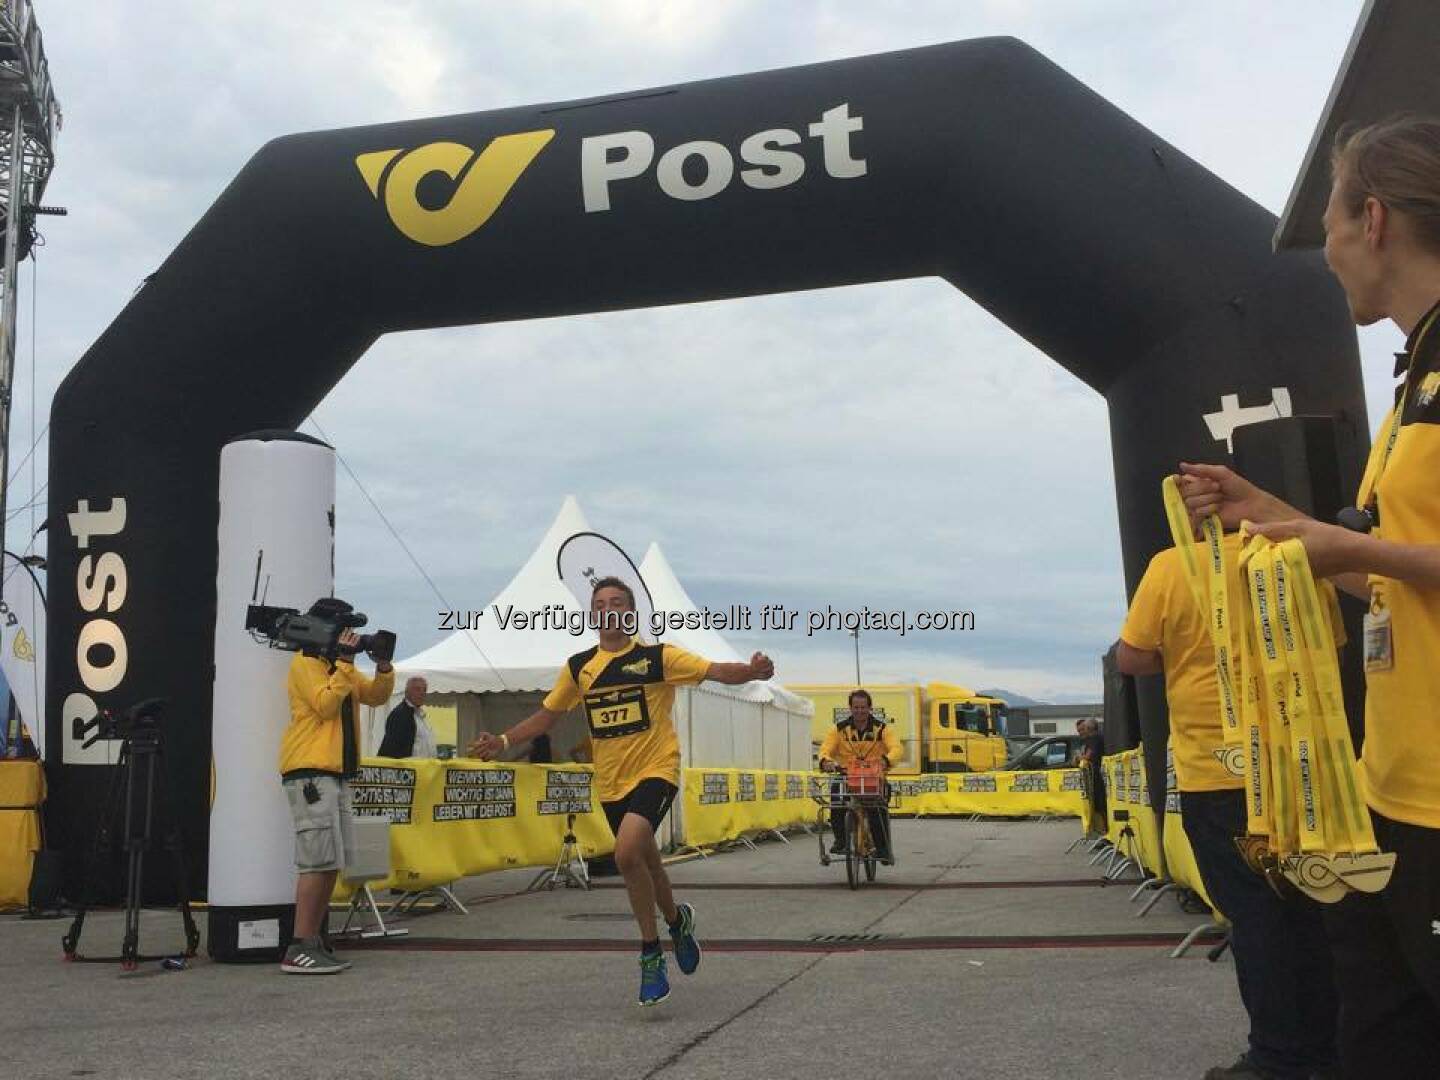 Herzlichen Glückwunsch an unseren Postler Florian Fuchs, dem Sieger des Familienlaufs in Wals-Siezenheim! 

Die ersten 300 KM liegen nun hinter uns - weiter geht's für #MissionSusi  Source: http://facebook.com/unserepost